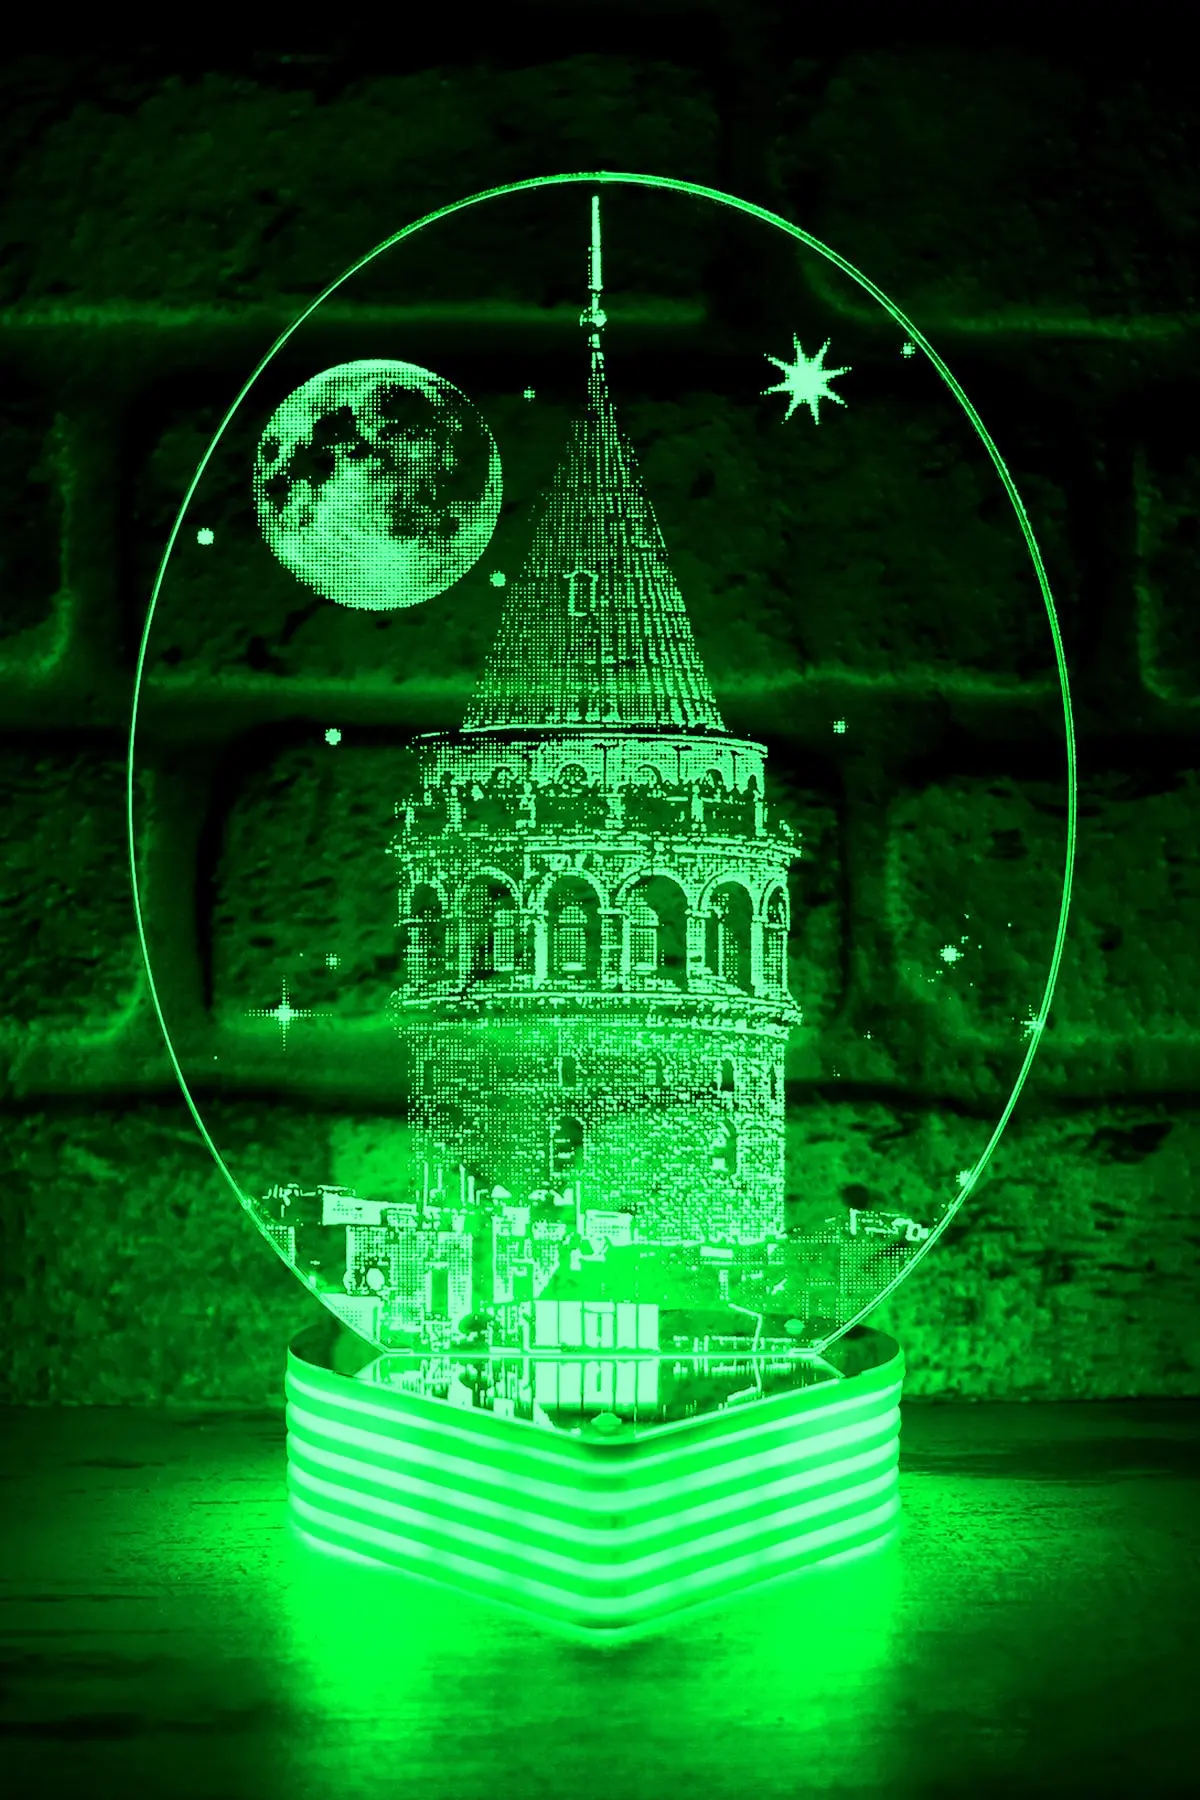 آباژور رومیزی سبز مدل Galata Tower